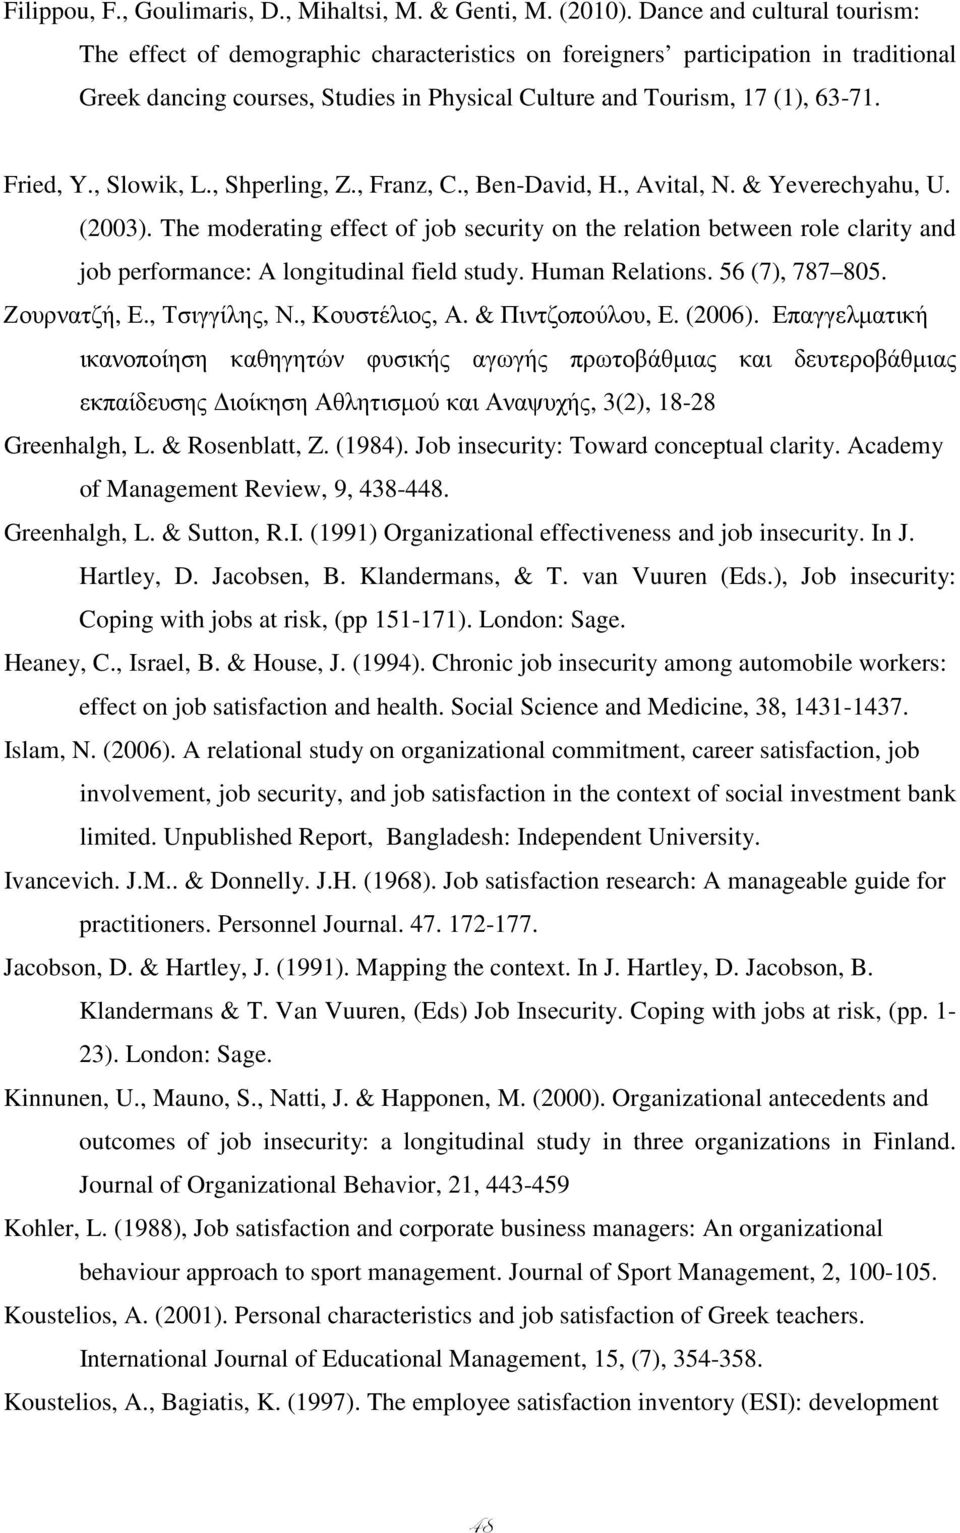 Fried, Y., Slowik, L., Shperling, Z., Franz, C., Ben-David, H., Avital, N. & Yeverechyahu, U. (2003).